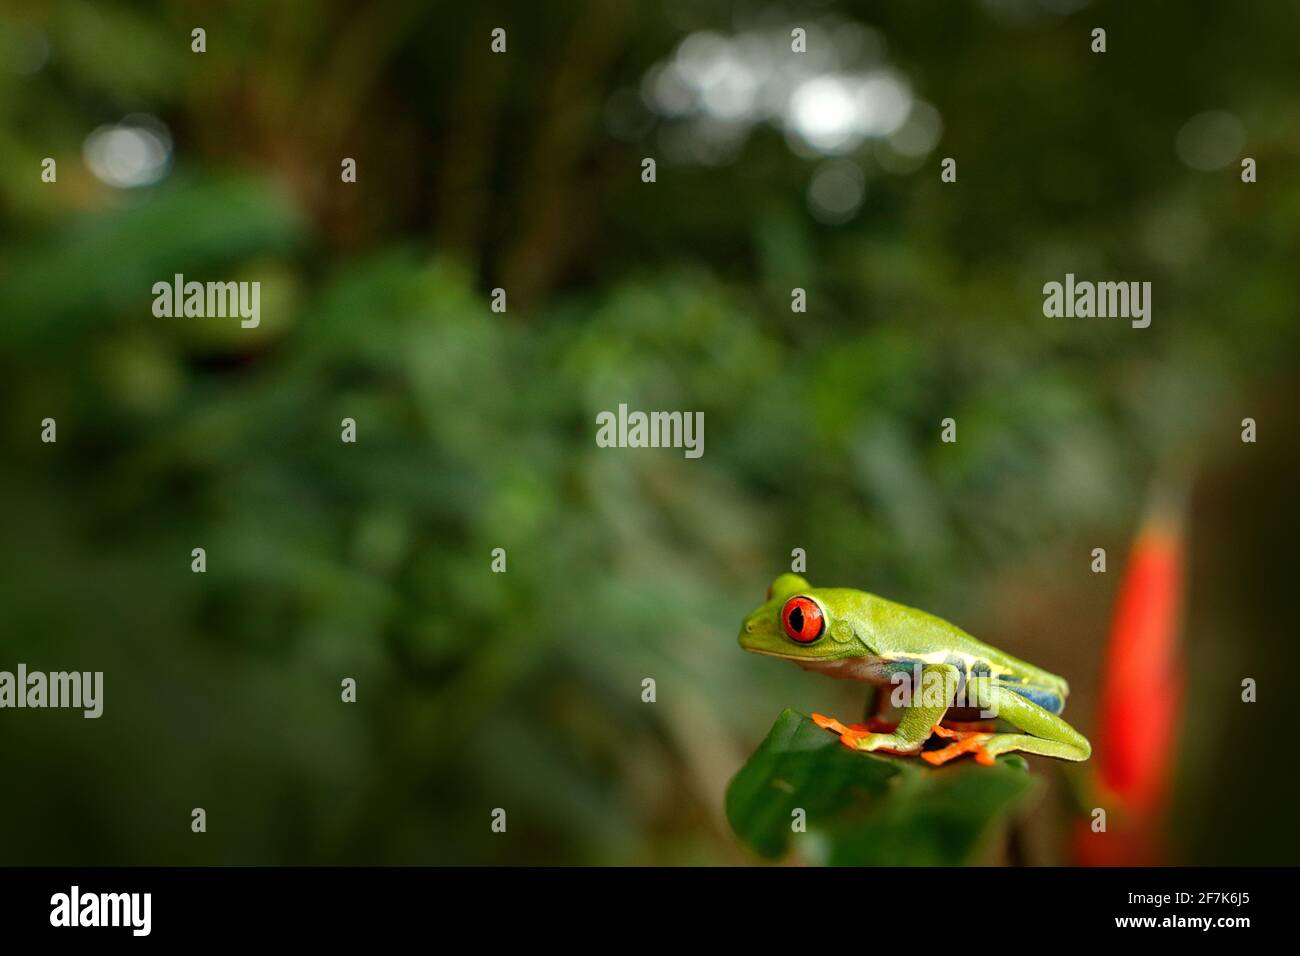 Agalychnis callidryas, Grenouille à yeux rouges, animal aux yeux rouges, dans un habitat naturel, Costa Rica. Belle grenouille dans la forêt tropicale. Magnifique amphibi Banque D'Images